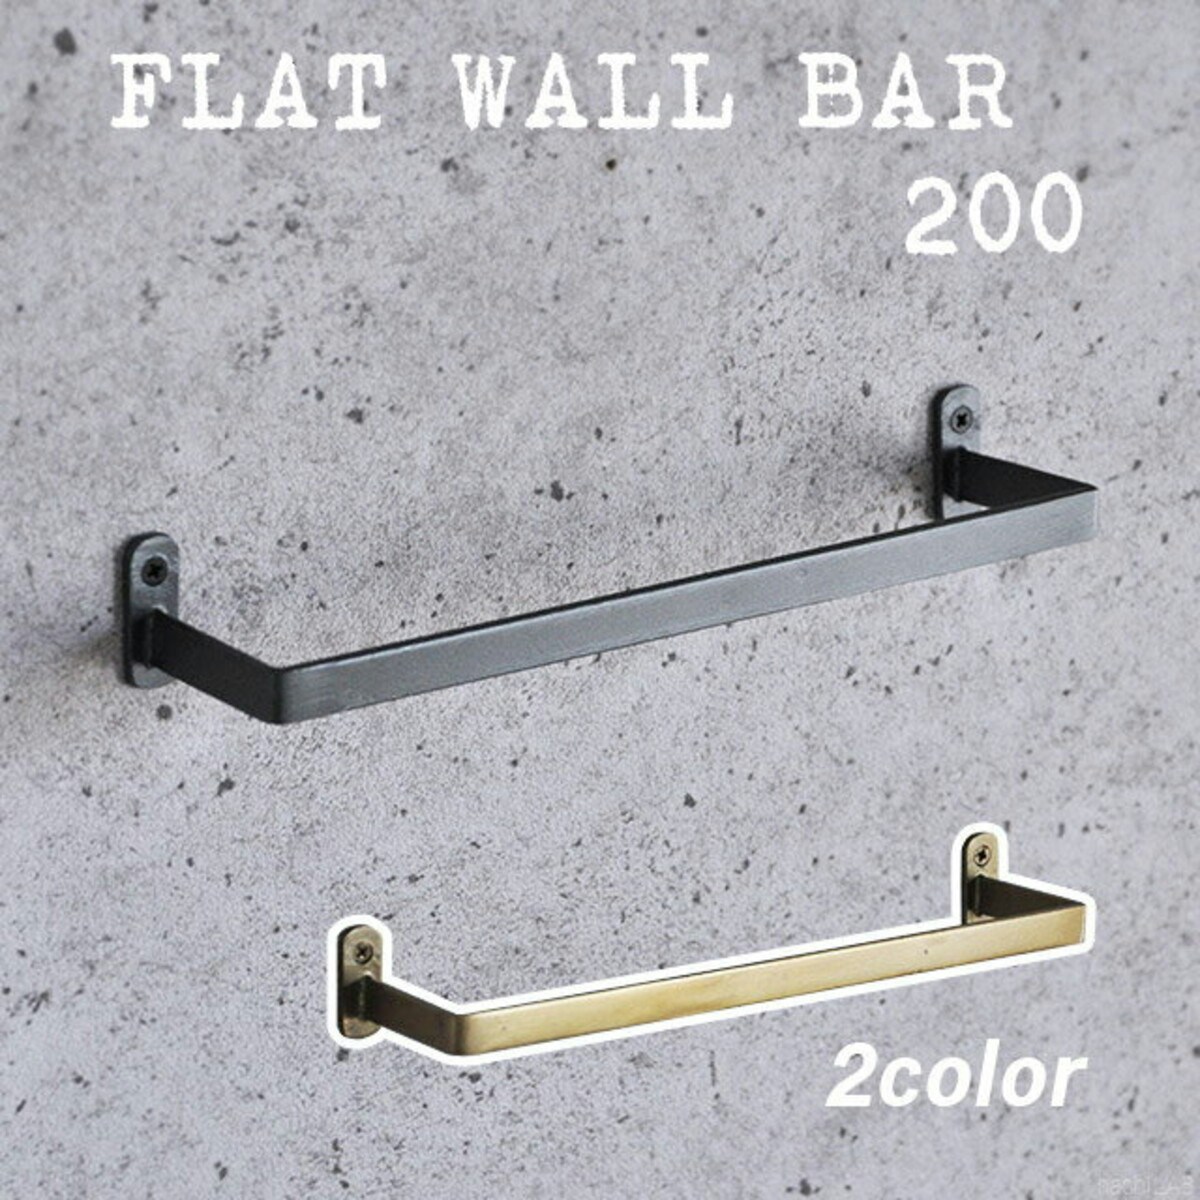 壁面バー （FLAT WALL BAR 200）ガンメタリック・アンティークゴールド/ タオル掛け 